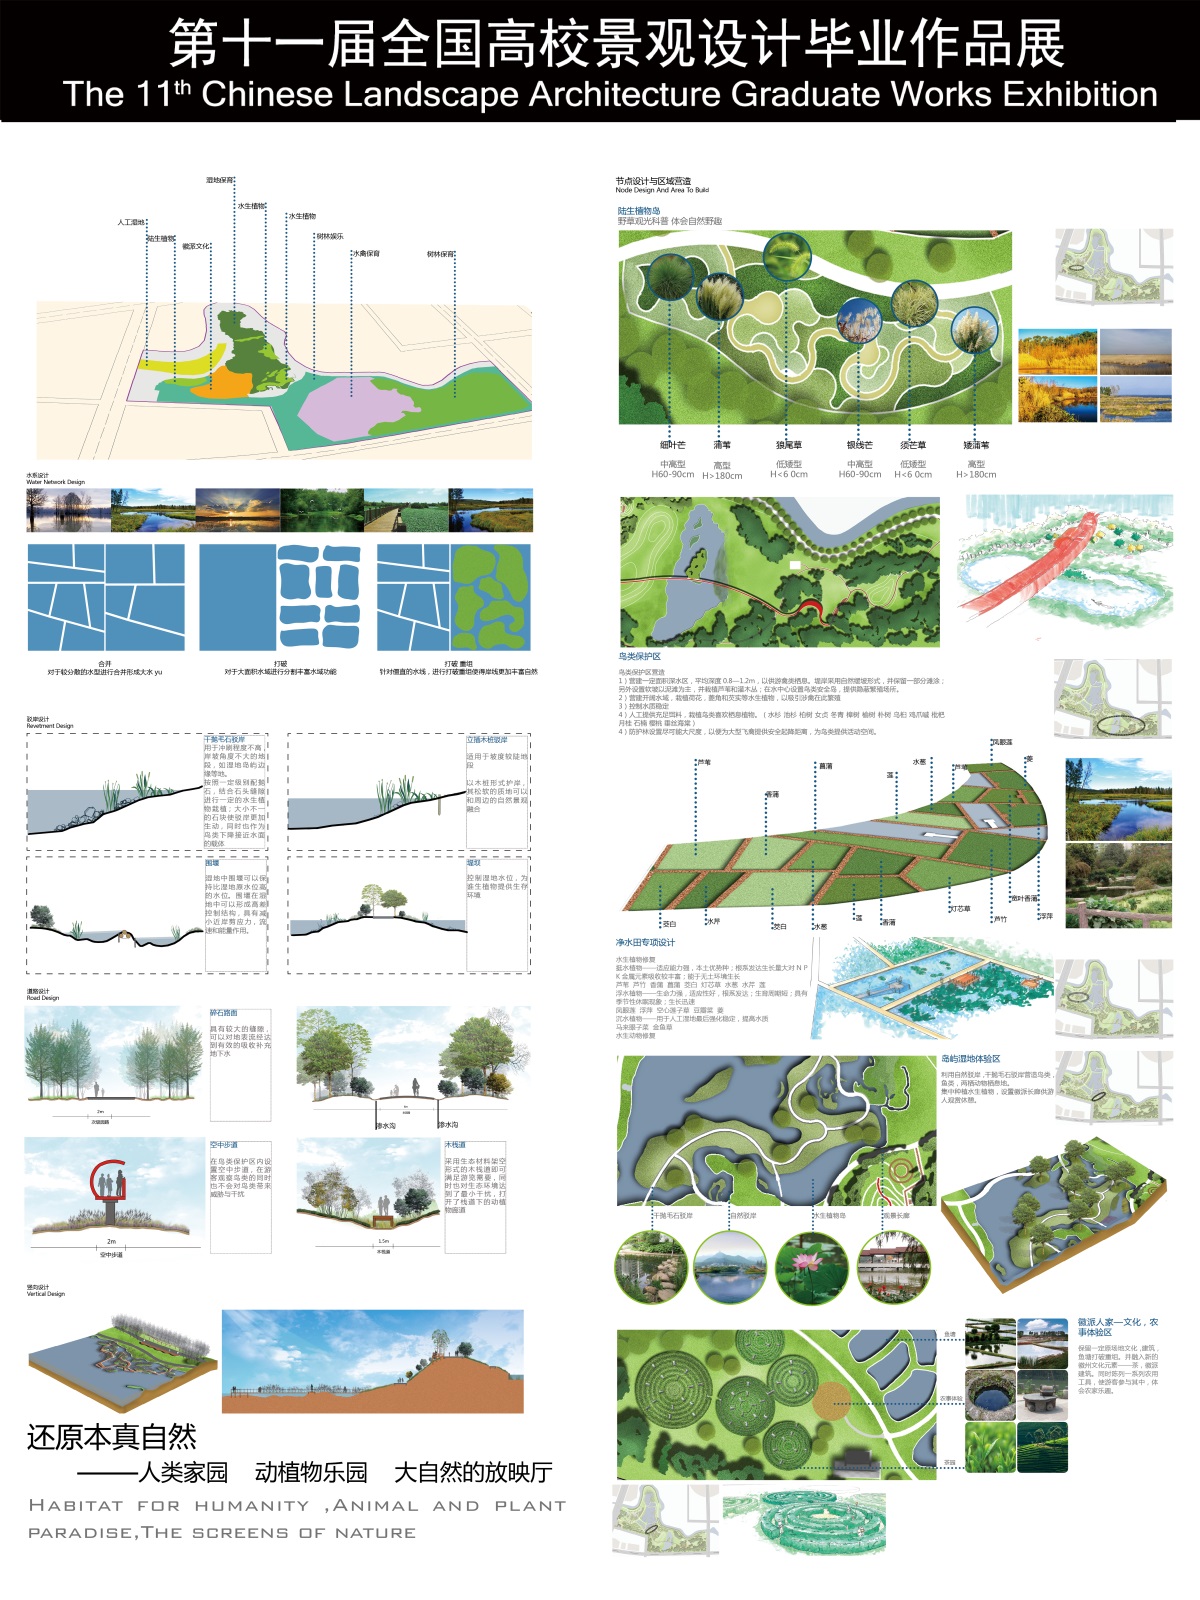 二十埠河湿地生态修复规划概念性设计-2